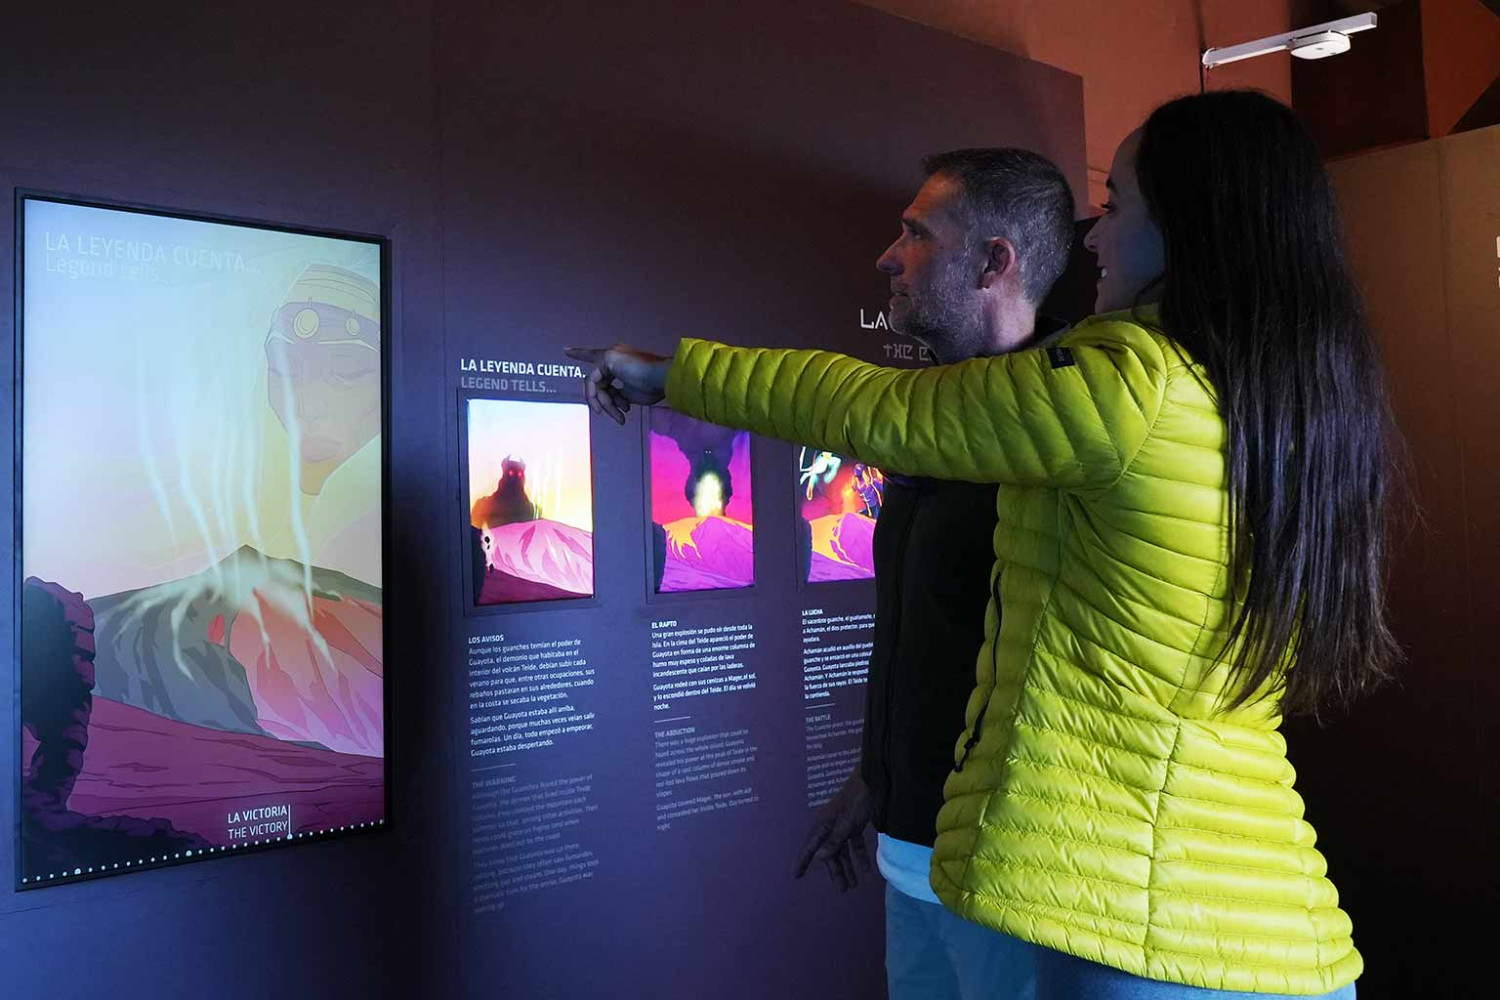 Stel leest een informatiepaneel van de Teide Legend-tentoonstelling